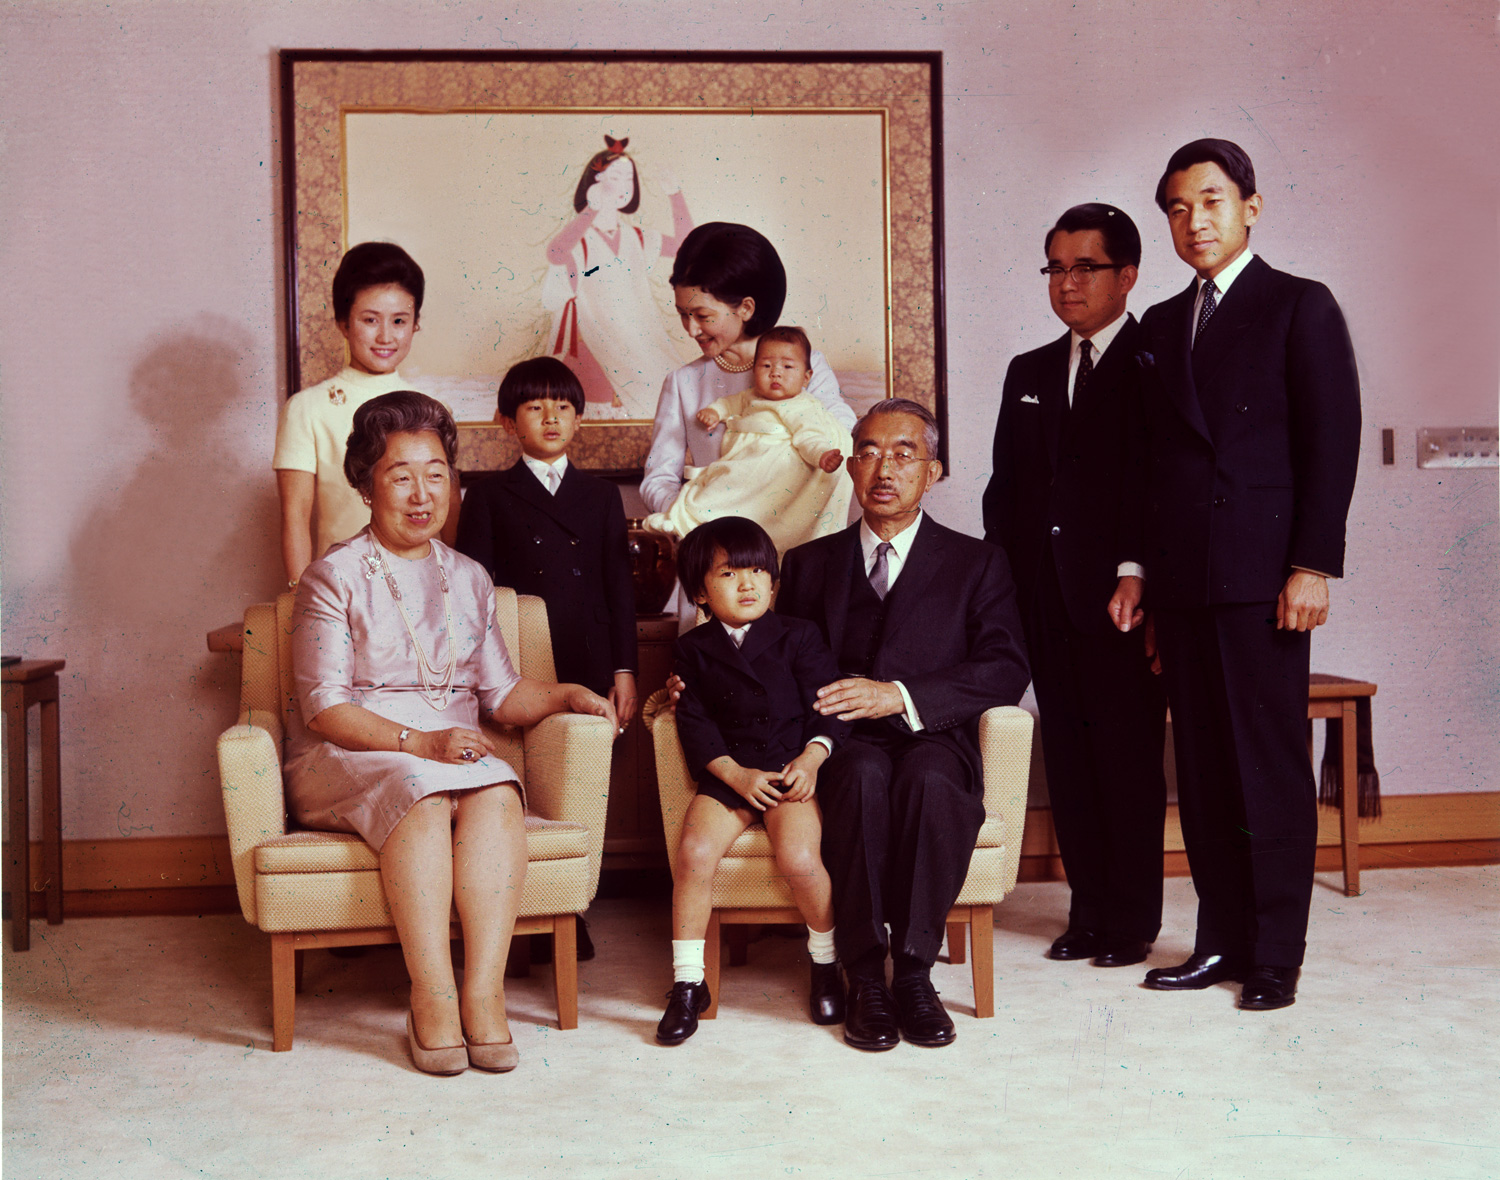 Император Хирохито (1901 - 1989) и императрица Нагако со своими детьми и внуками
&nbsp;